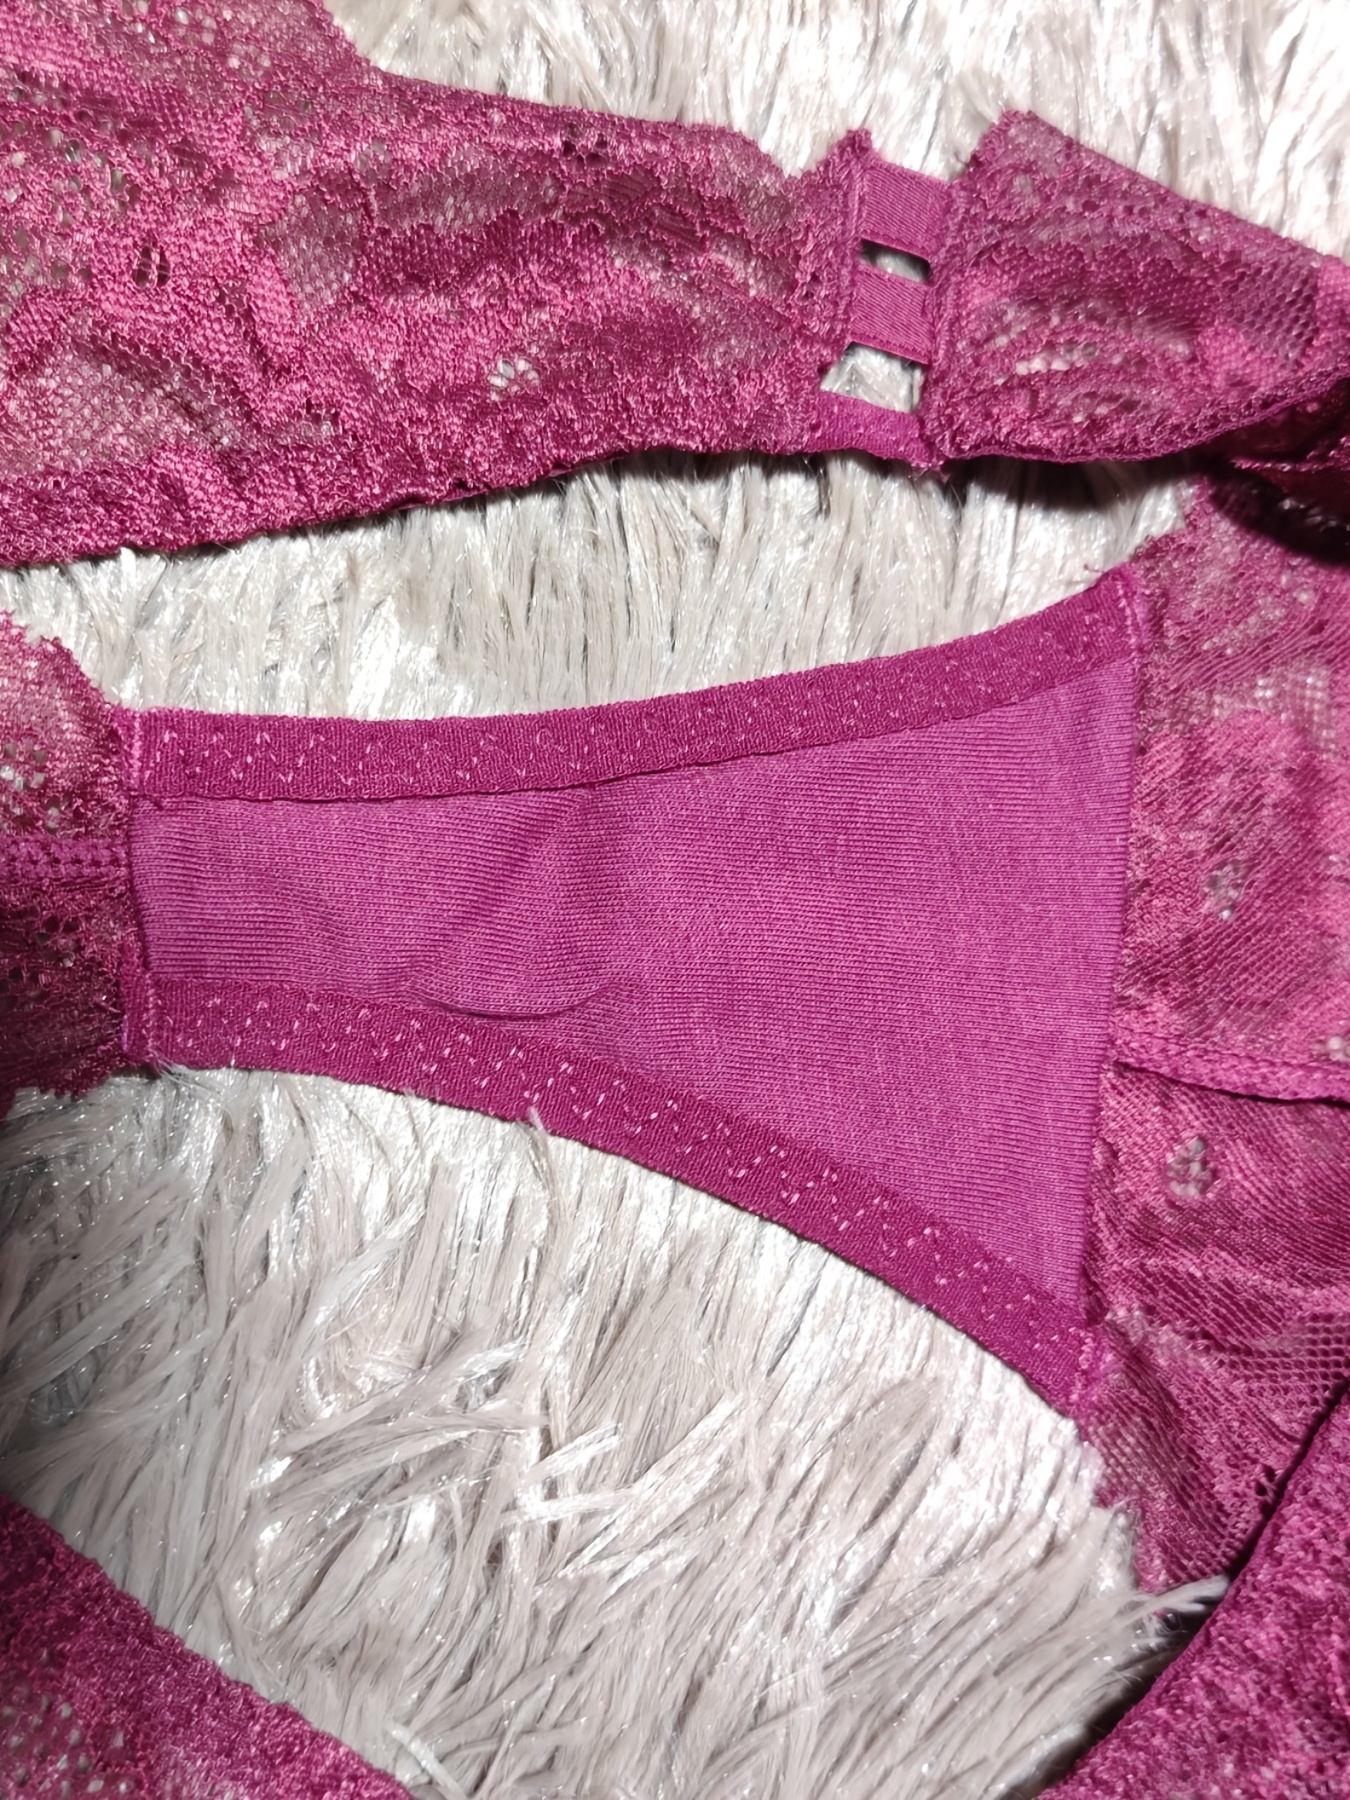 NWT Victoria's Secret unlined 34C,34D BRA SET S mesh Thong neon Pink Purple  lace